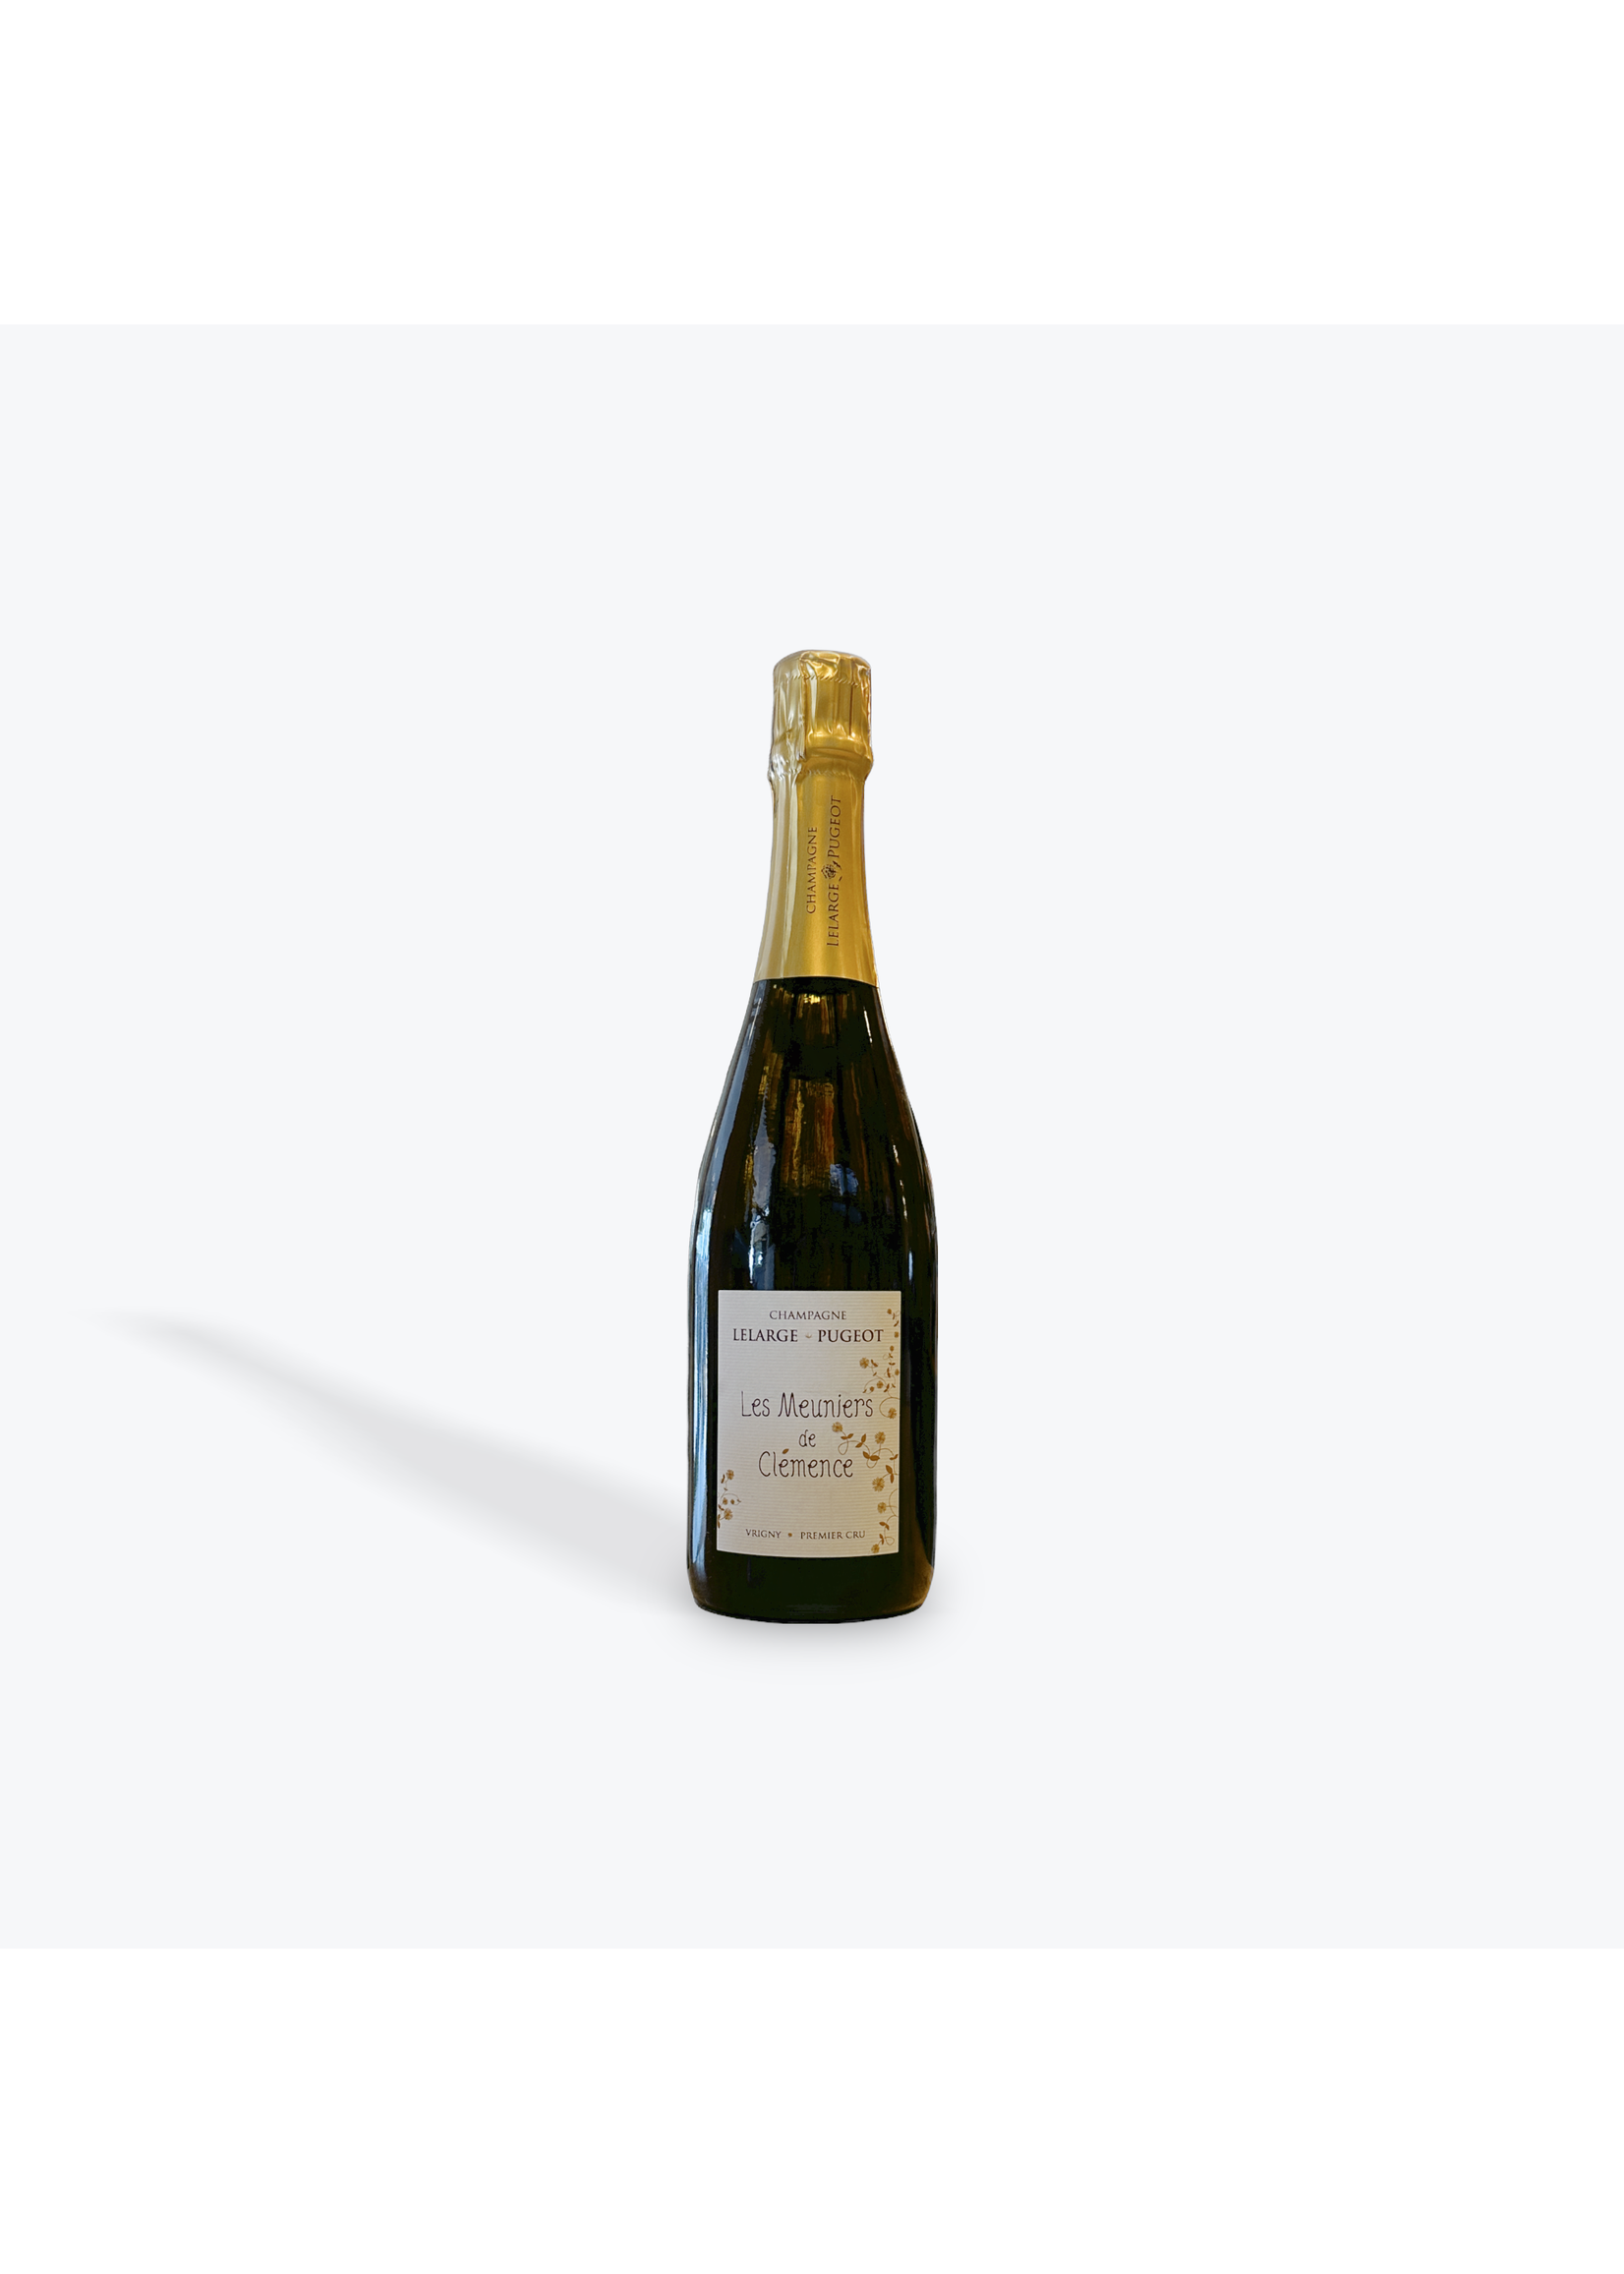 Lelarge-Pugeot Champagne - Lelarge-Pugeot - Le Meuniers de Clemence